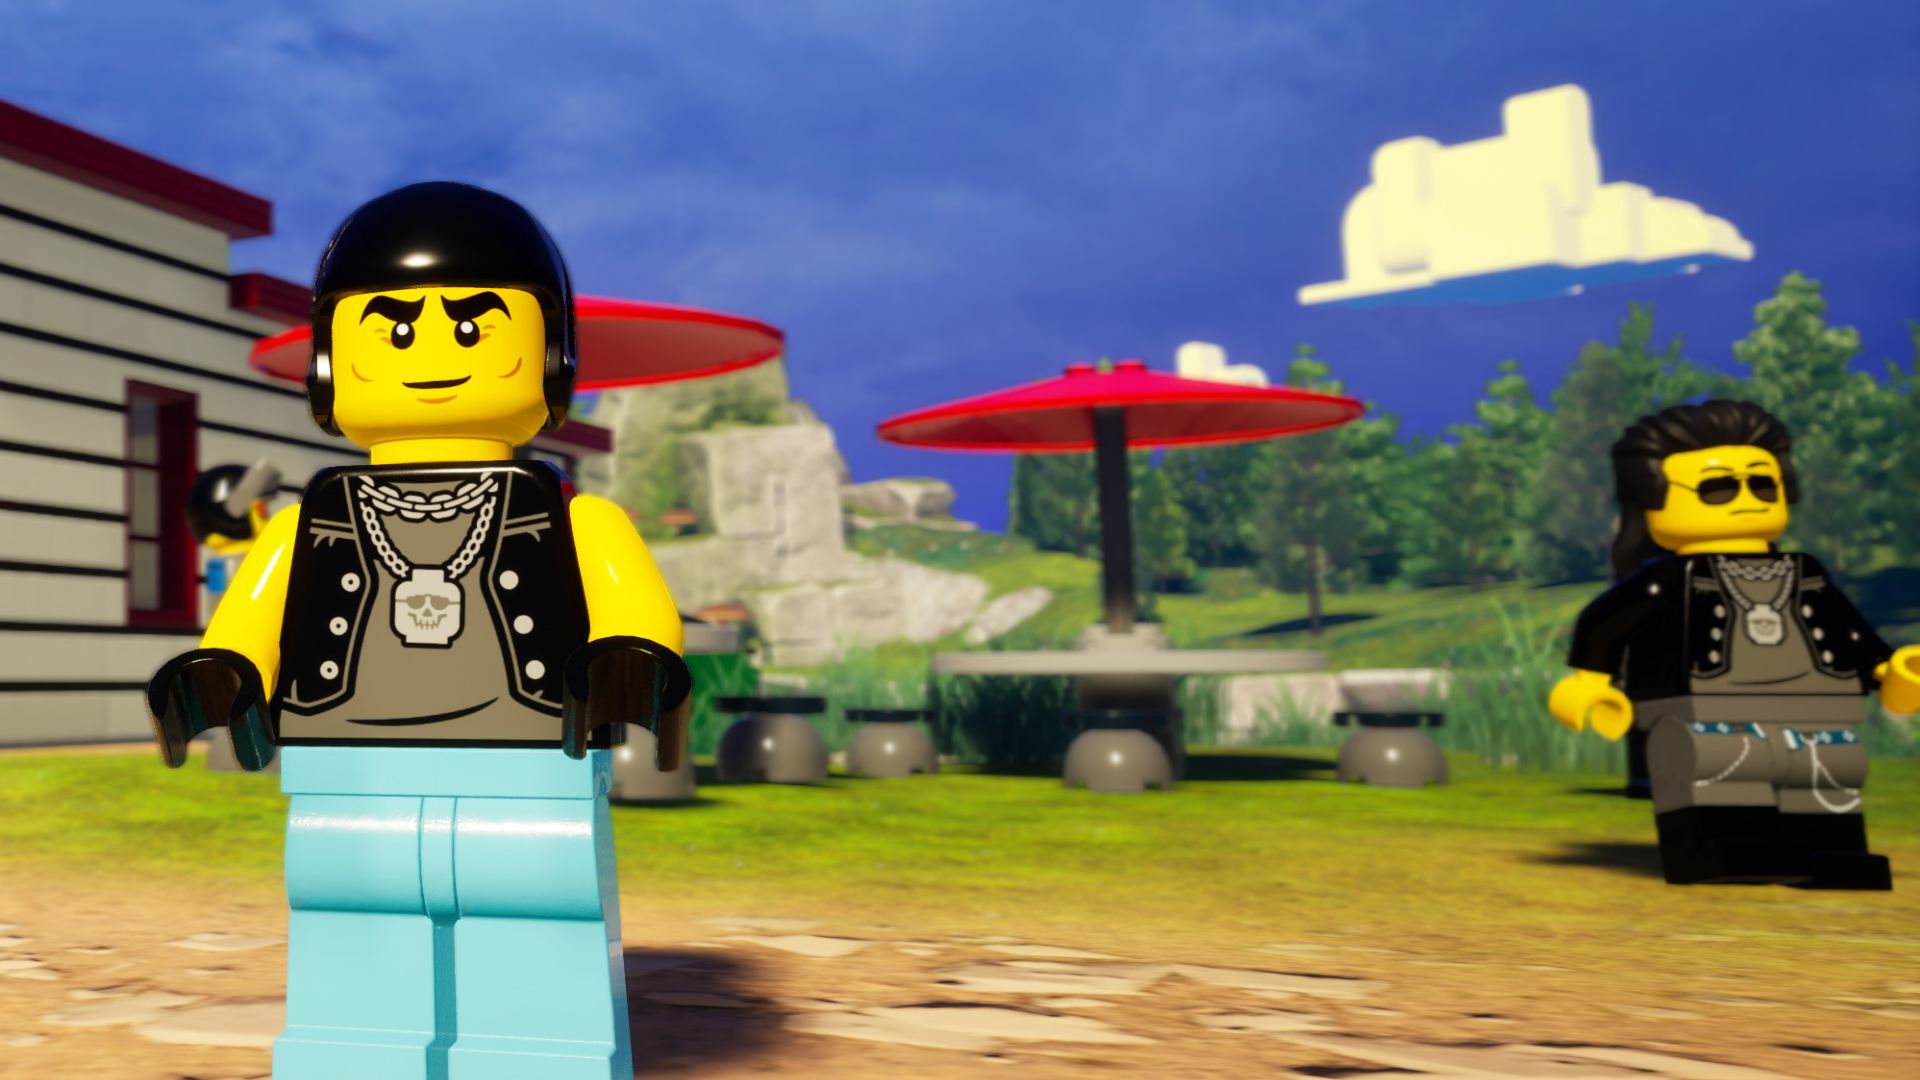 Is LEGO Fortnite split-screen co-op?